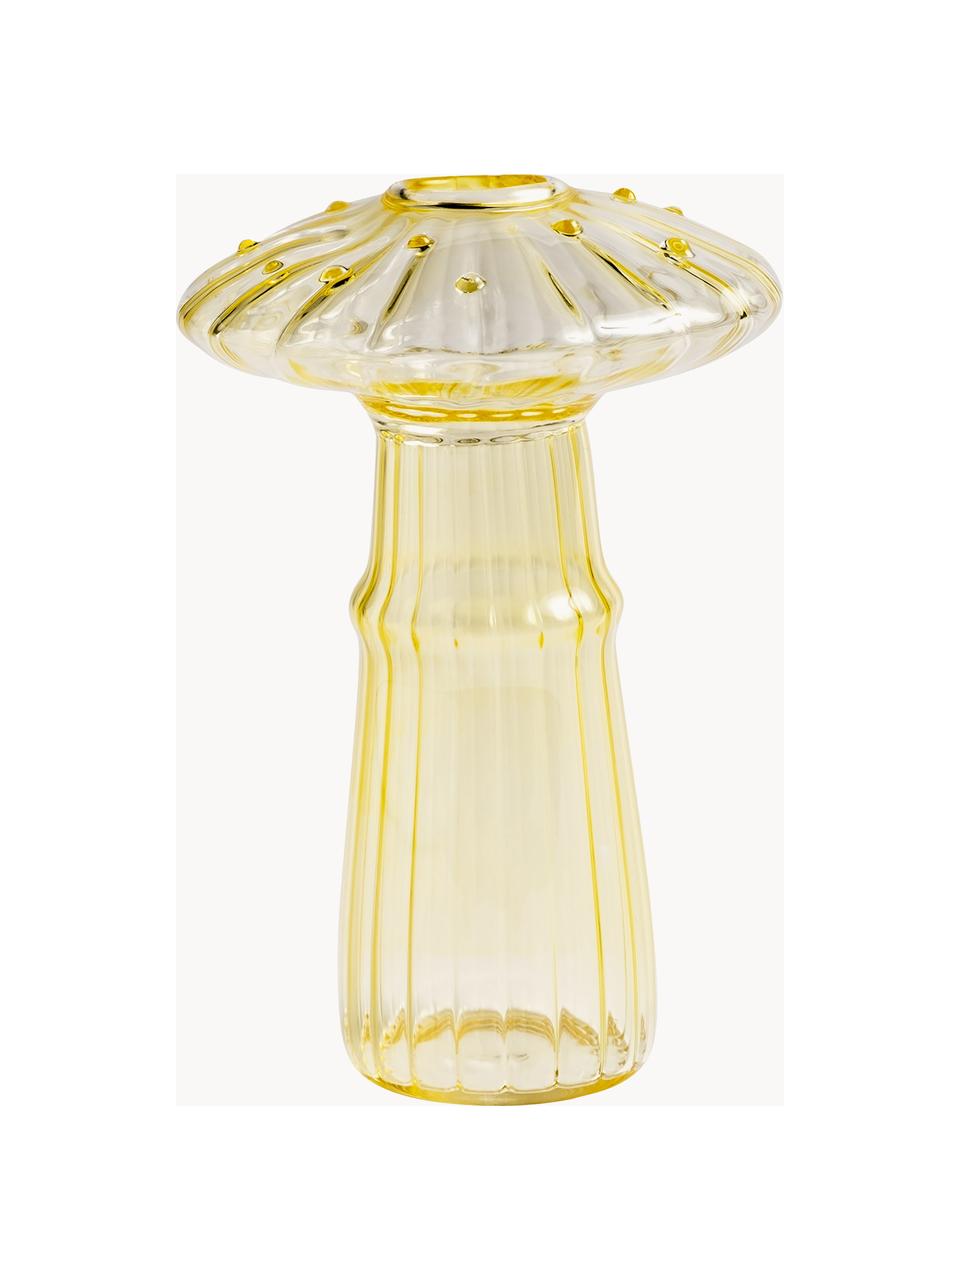 Skleněná váza Mushroom, V 14 cm, Sklo, Světle žlutá, Ø 9 cm, V 14 cm